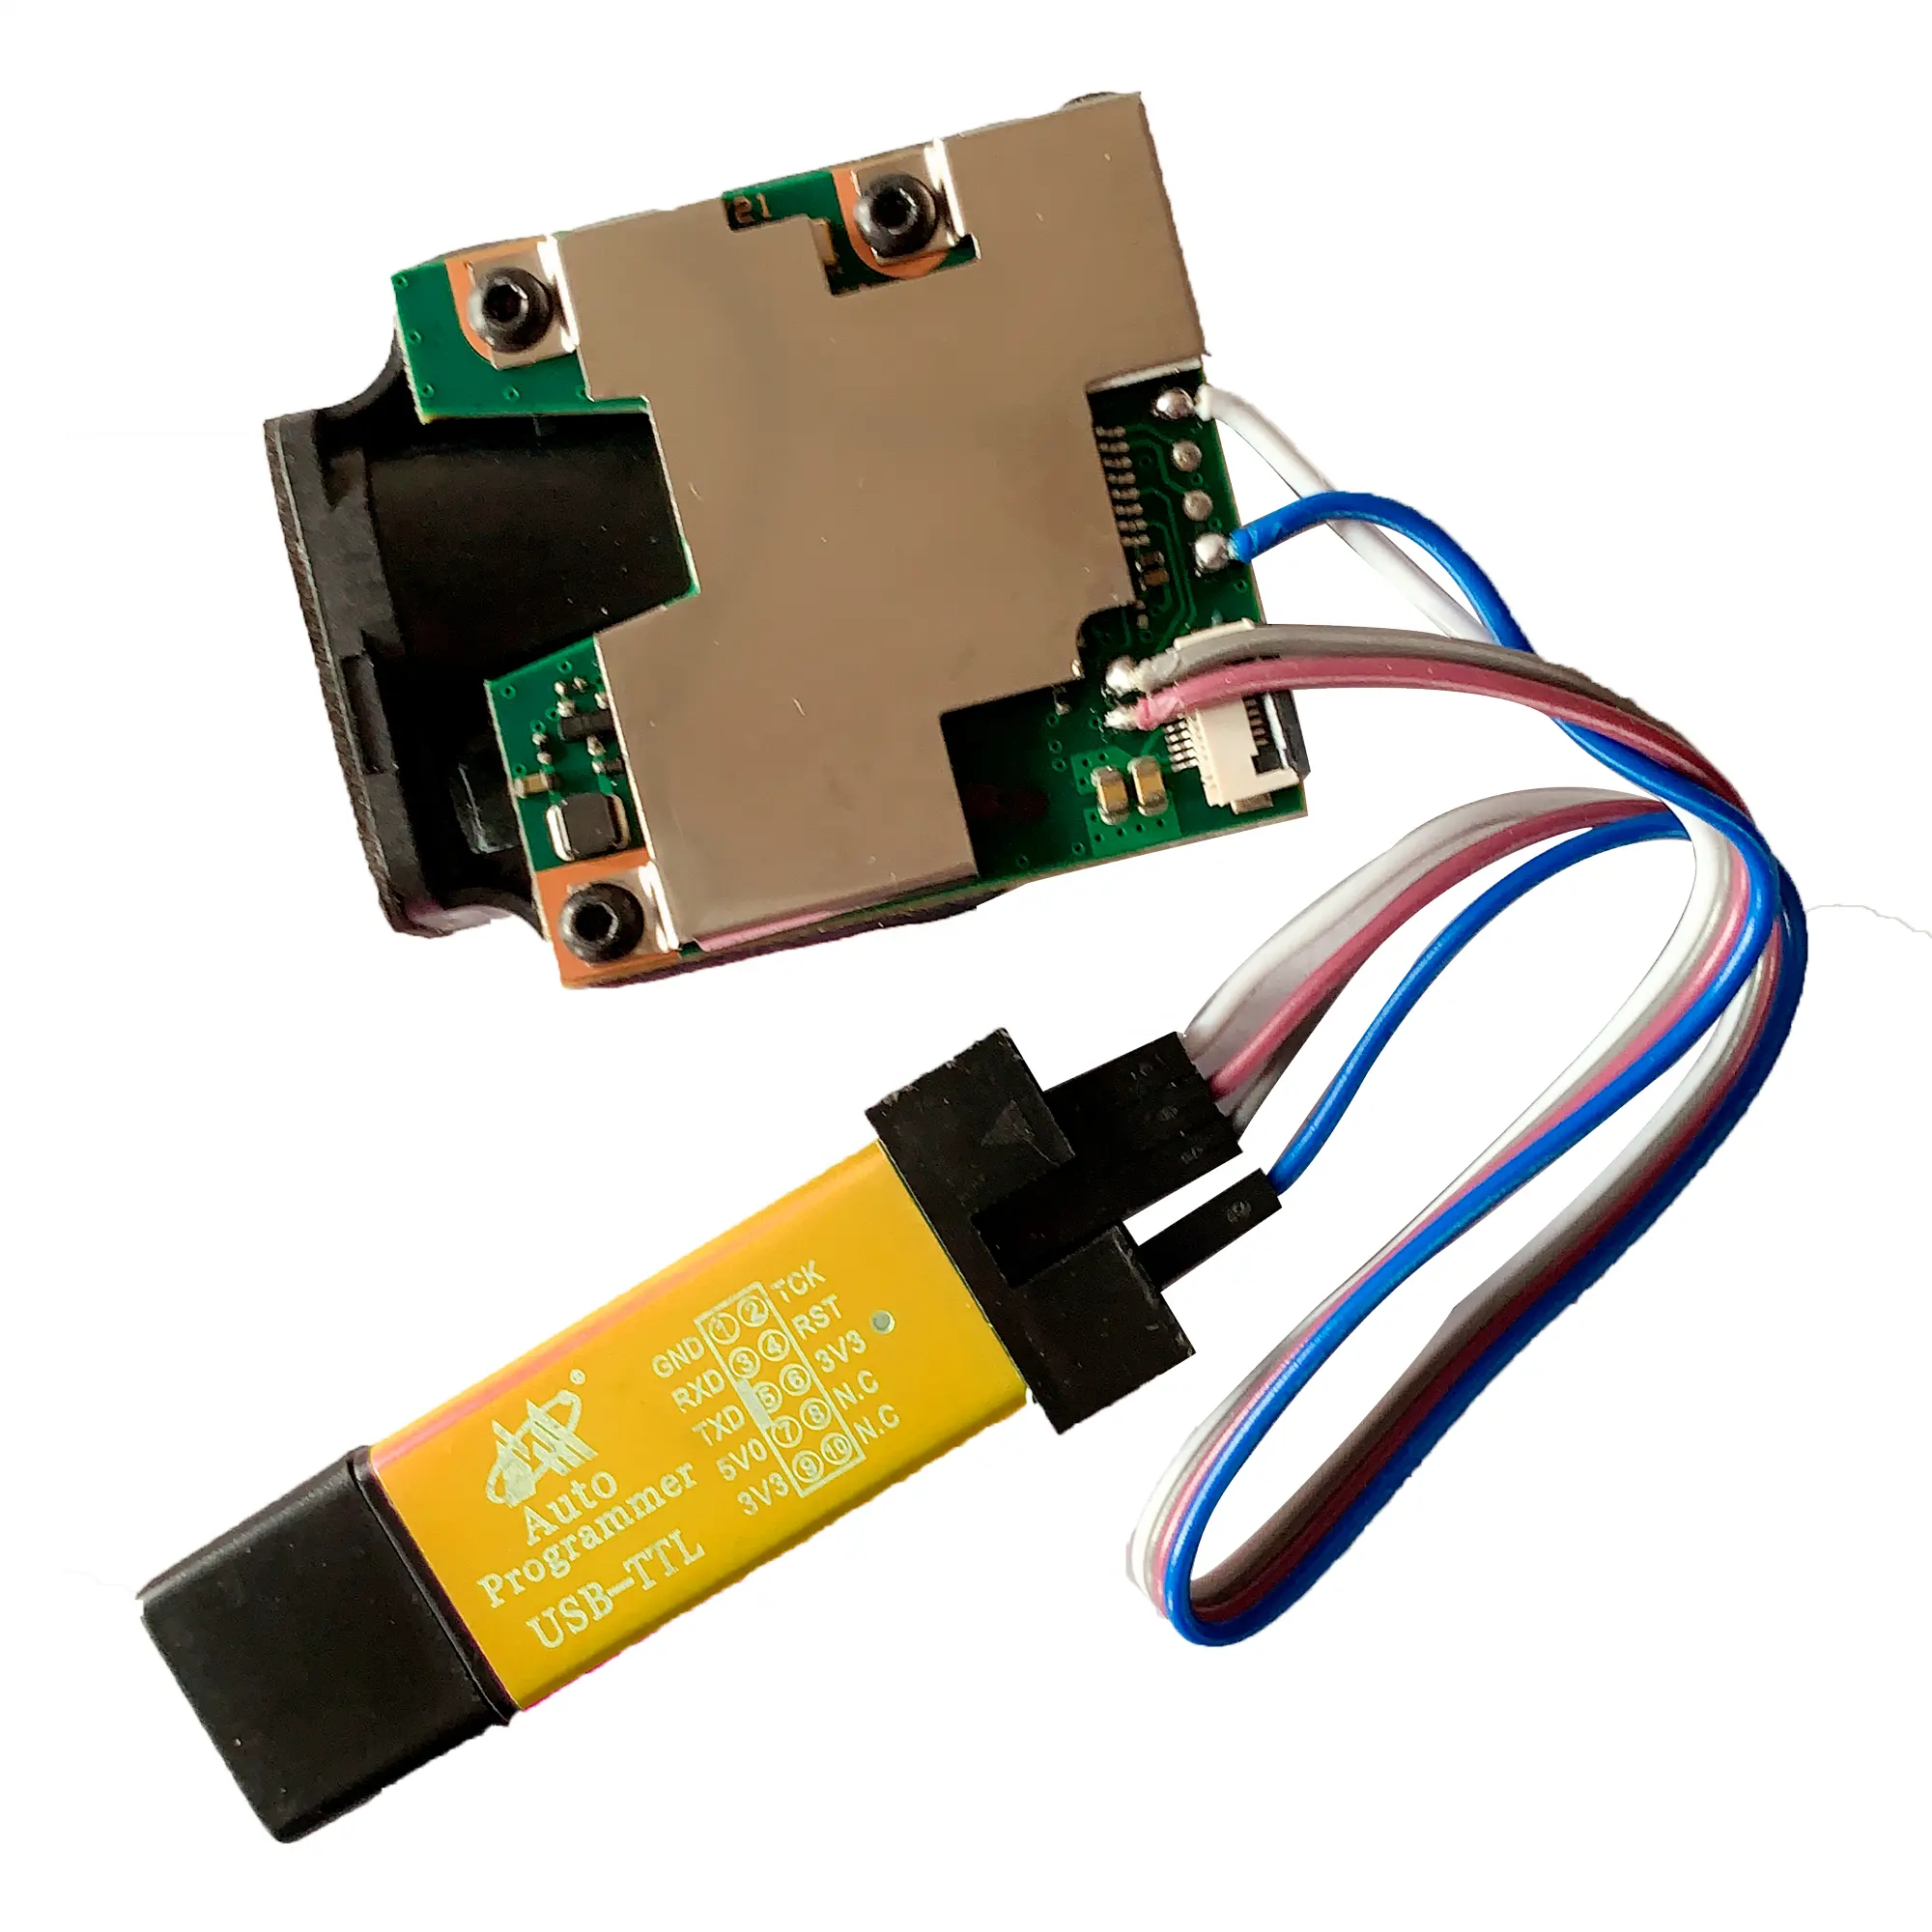 0.2mm resolution TTL/RS232/USB laser distance rangefinder measuring meter module